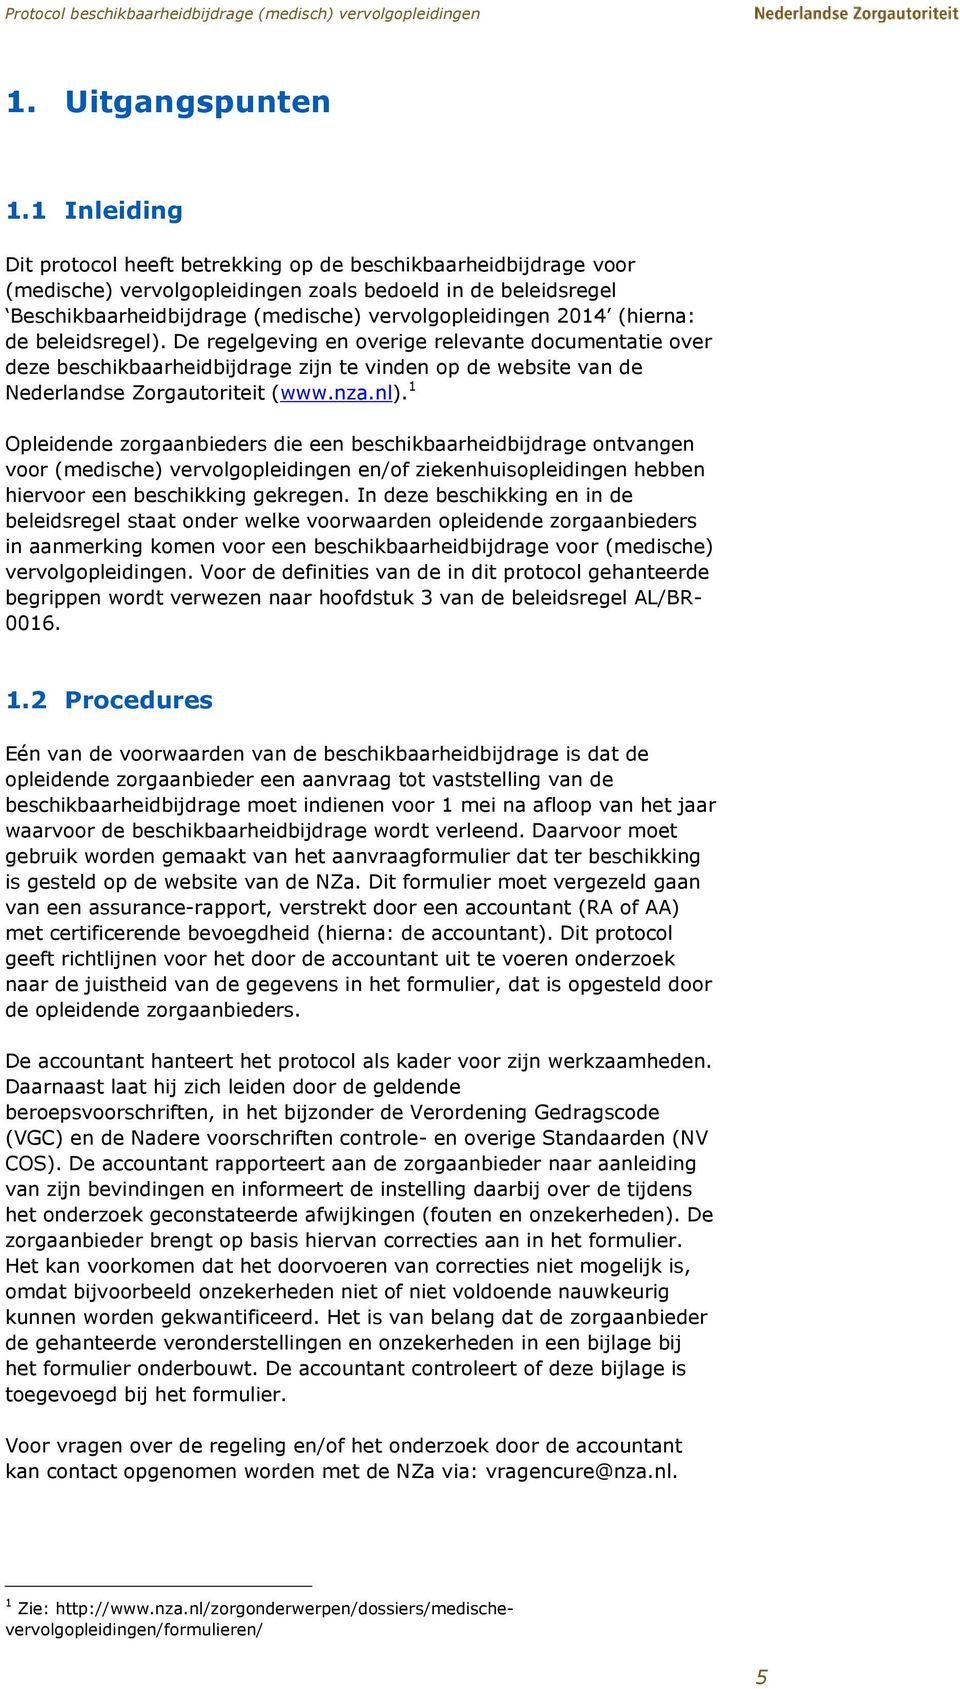 (hierna: de beleidsregel). De regelgeving en overige relevante documentatie over deze beschikbaarheidbijdrage zijn te vinden op de website van de Nederlandse Zorgautoriteit (www.nza.nl).